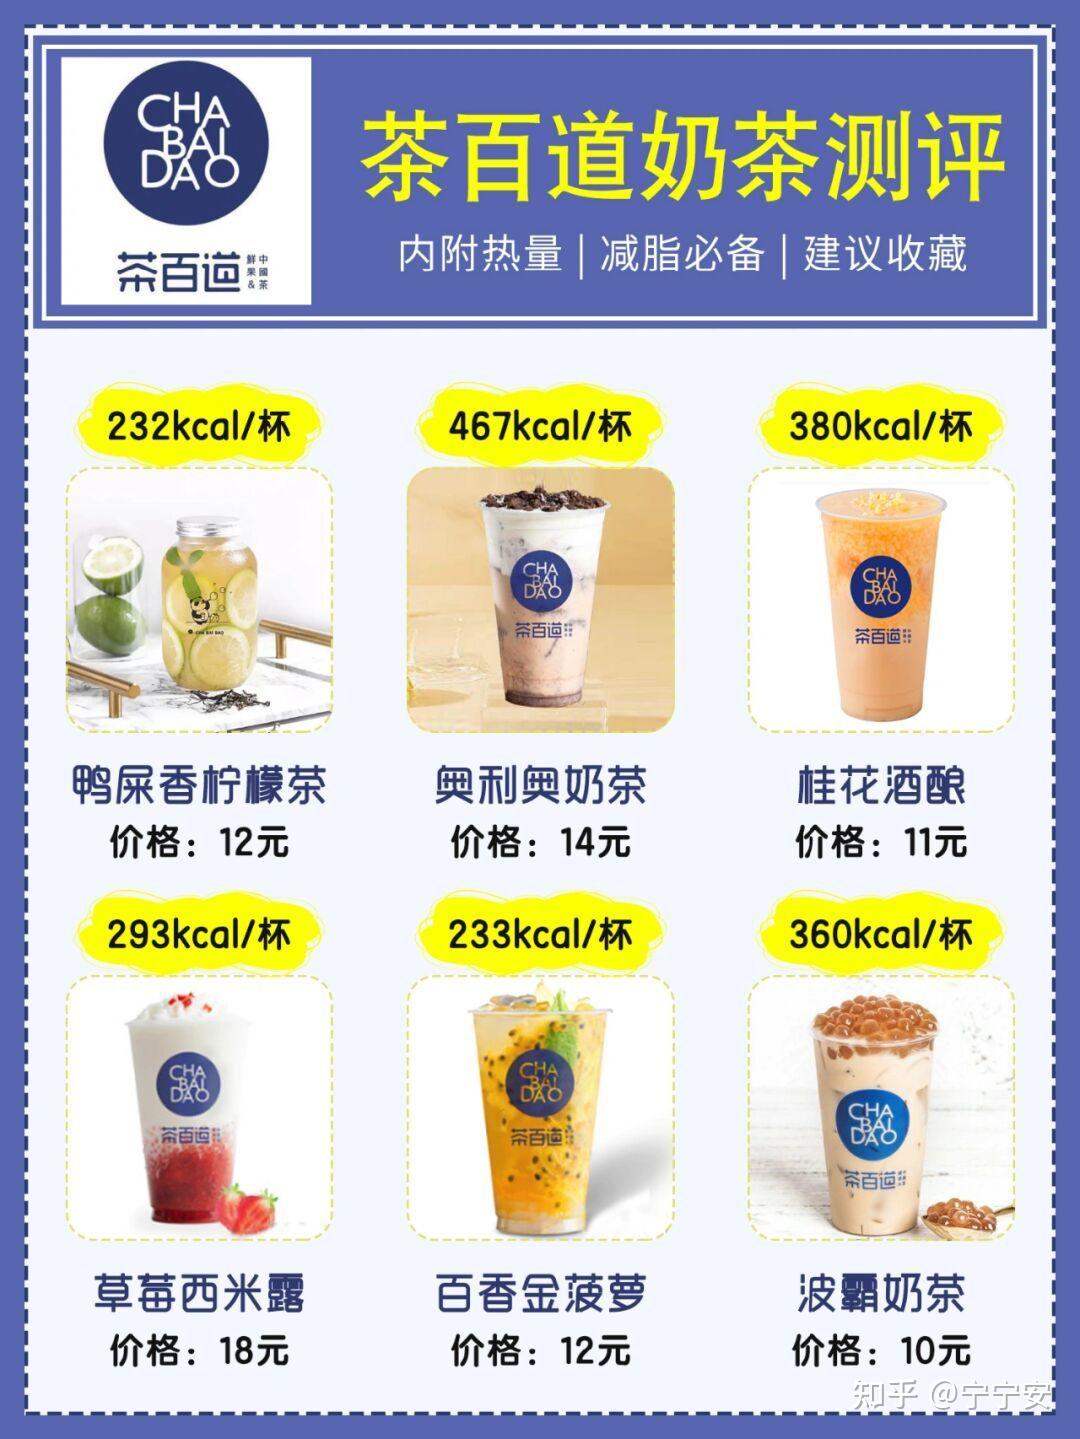 茶百道饮品成为新消费时代时尚健康饮品界一个符号 - 中国食品网络电视台